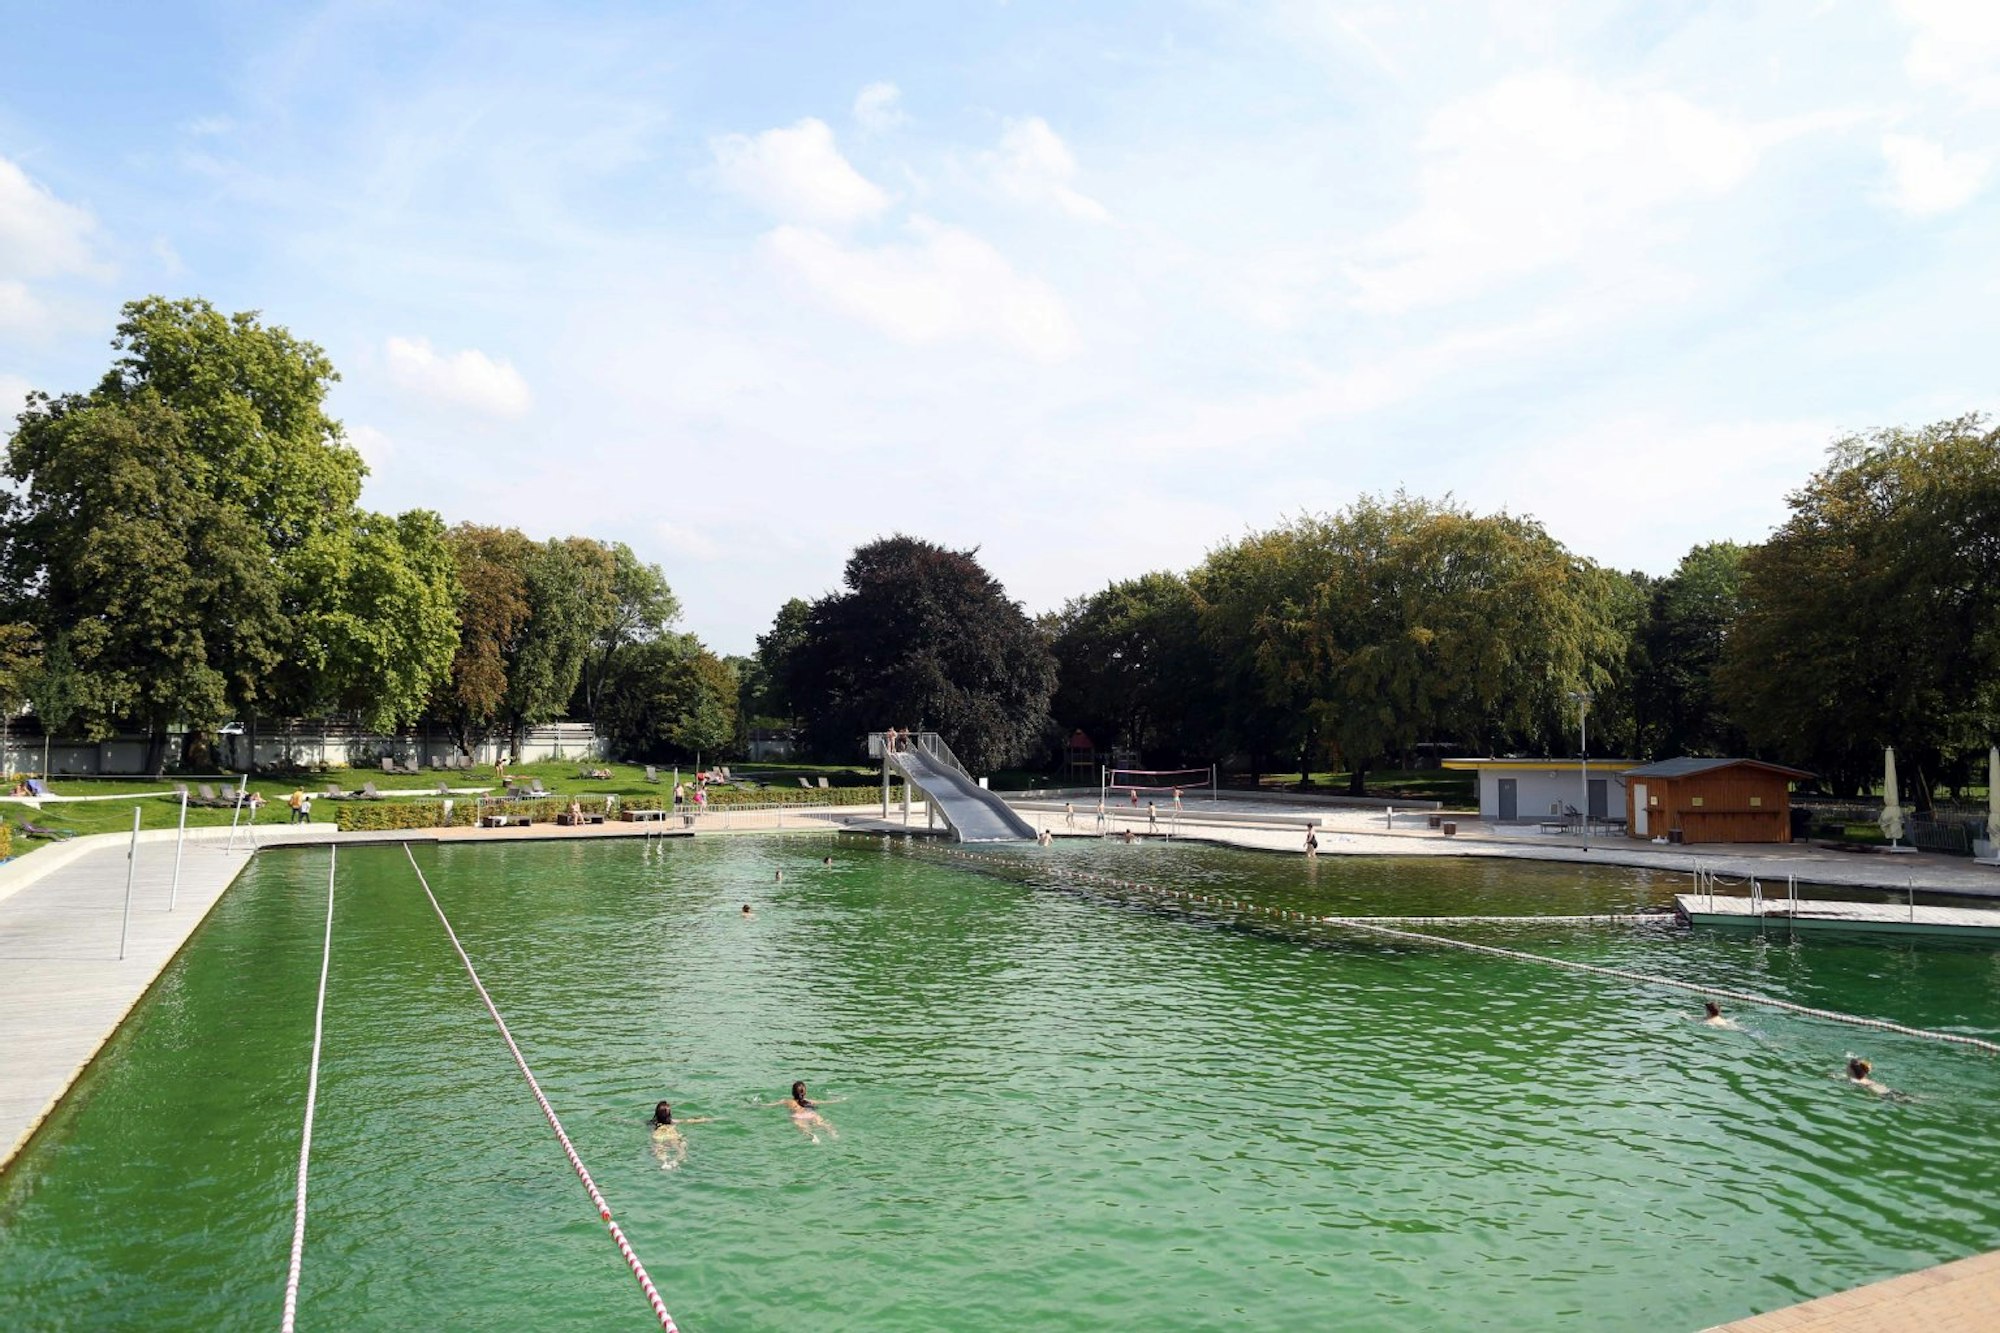 Lentpark Der Lentpark liegt im Stadtbezirk Innenstadt (Neustadt-Nord). Lentstraße 30, 50668 Köln. Erst im Frühjahr 2012 wurde der Außenbereich des Lentparks mit Schwimmbecken und Wasserrutsche eröffnet. Ein Naturbadeteich garantiert Schwimmvergnügen ganz ohne Chlor.